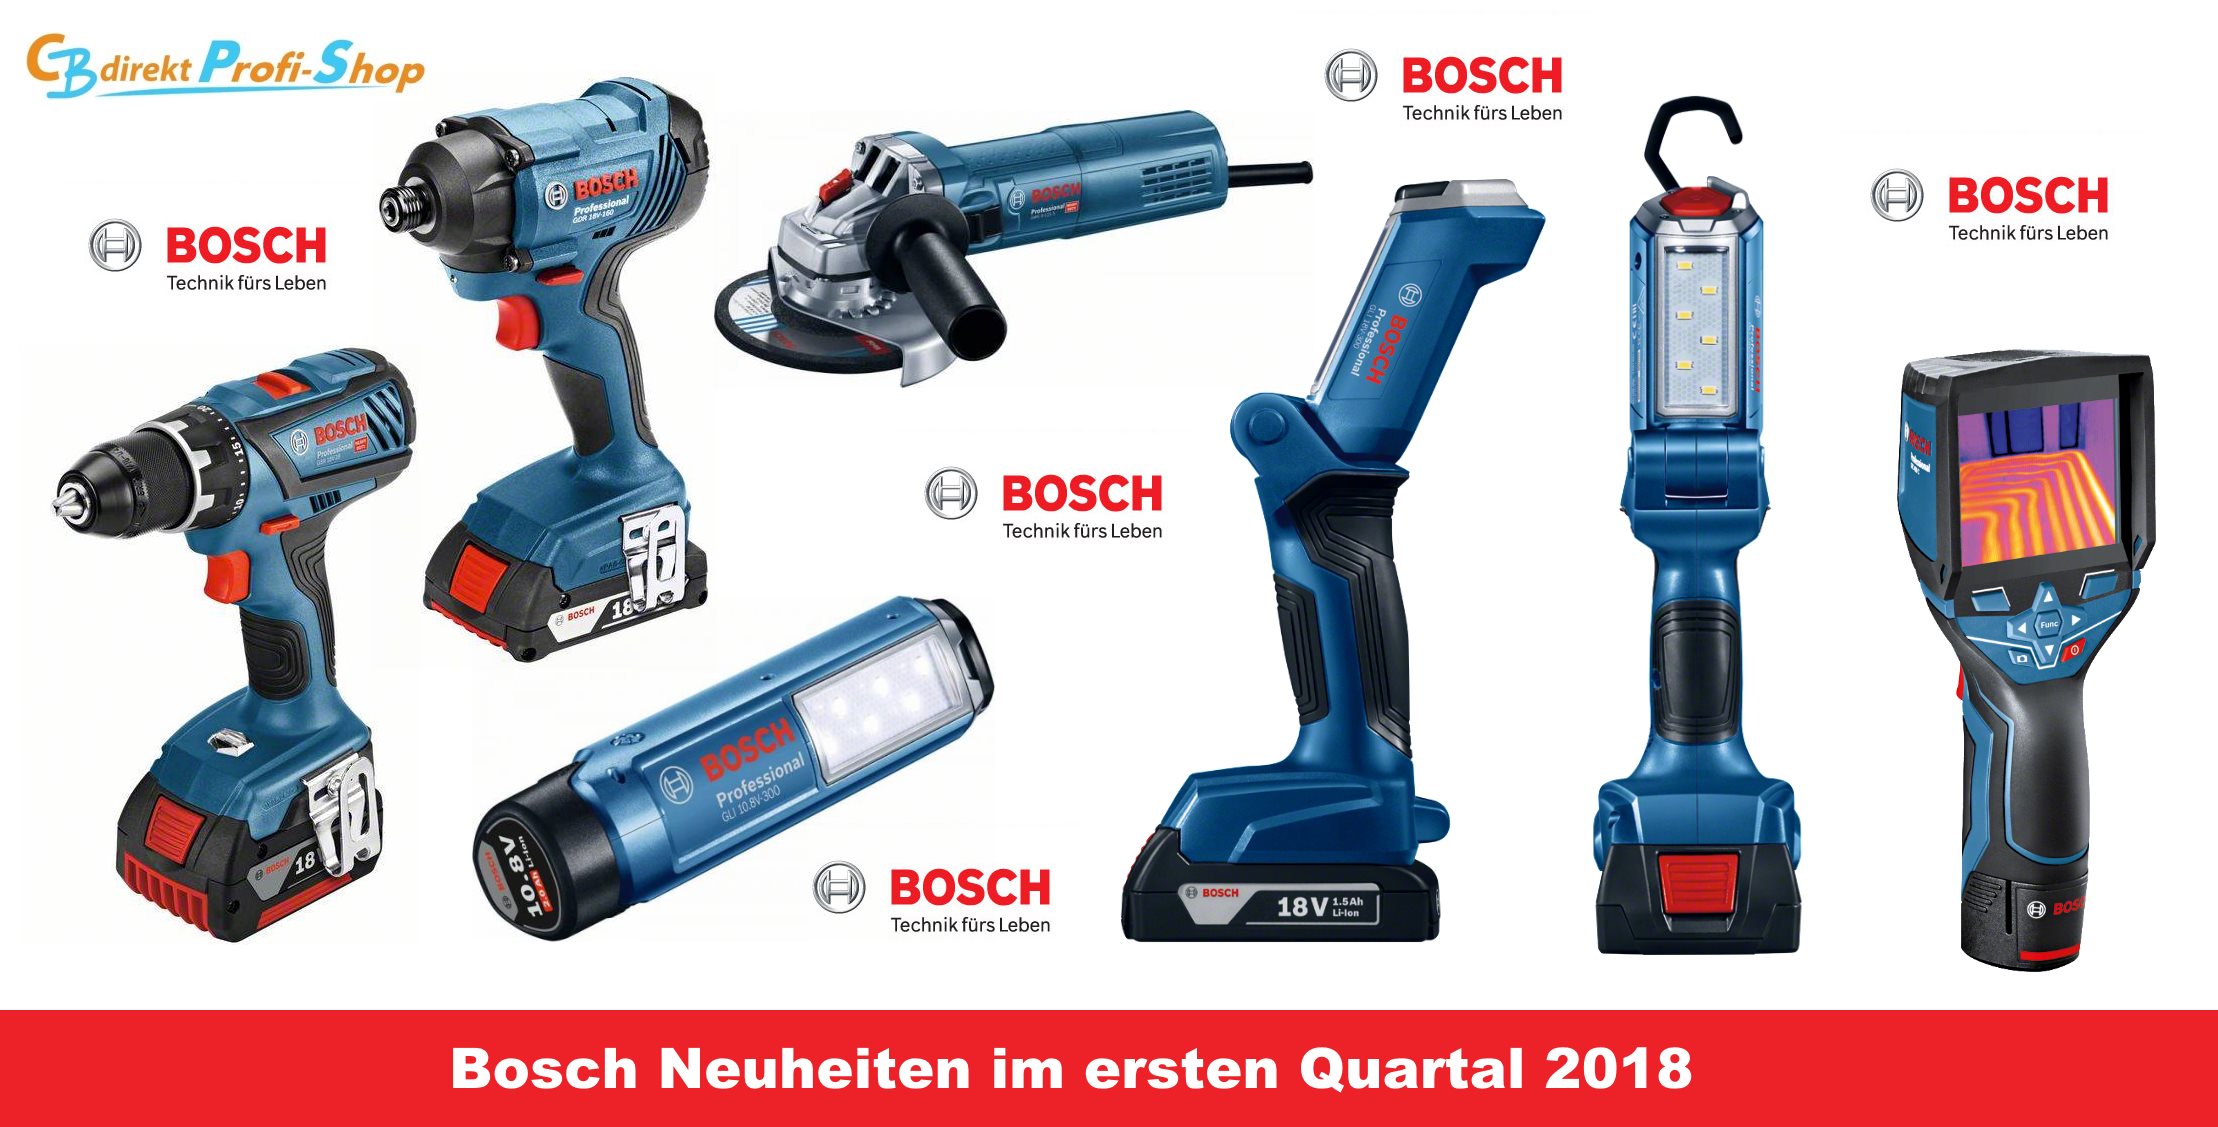 Bosch Neuheiten 2018 Teil 2